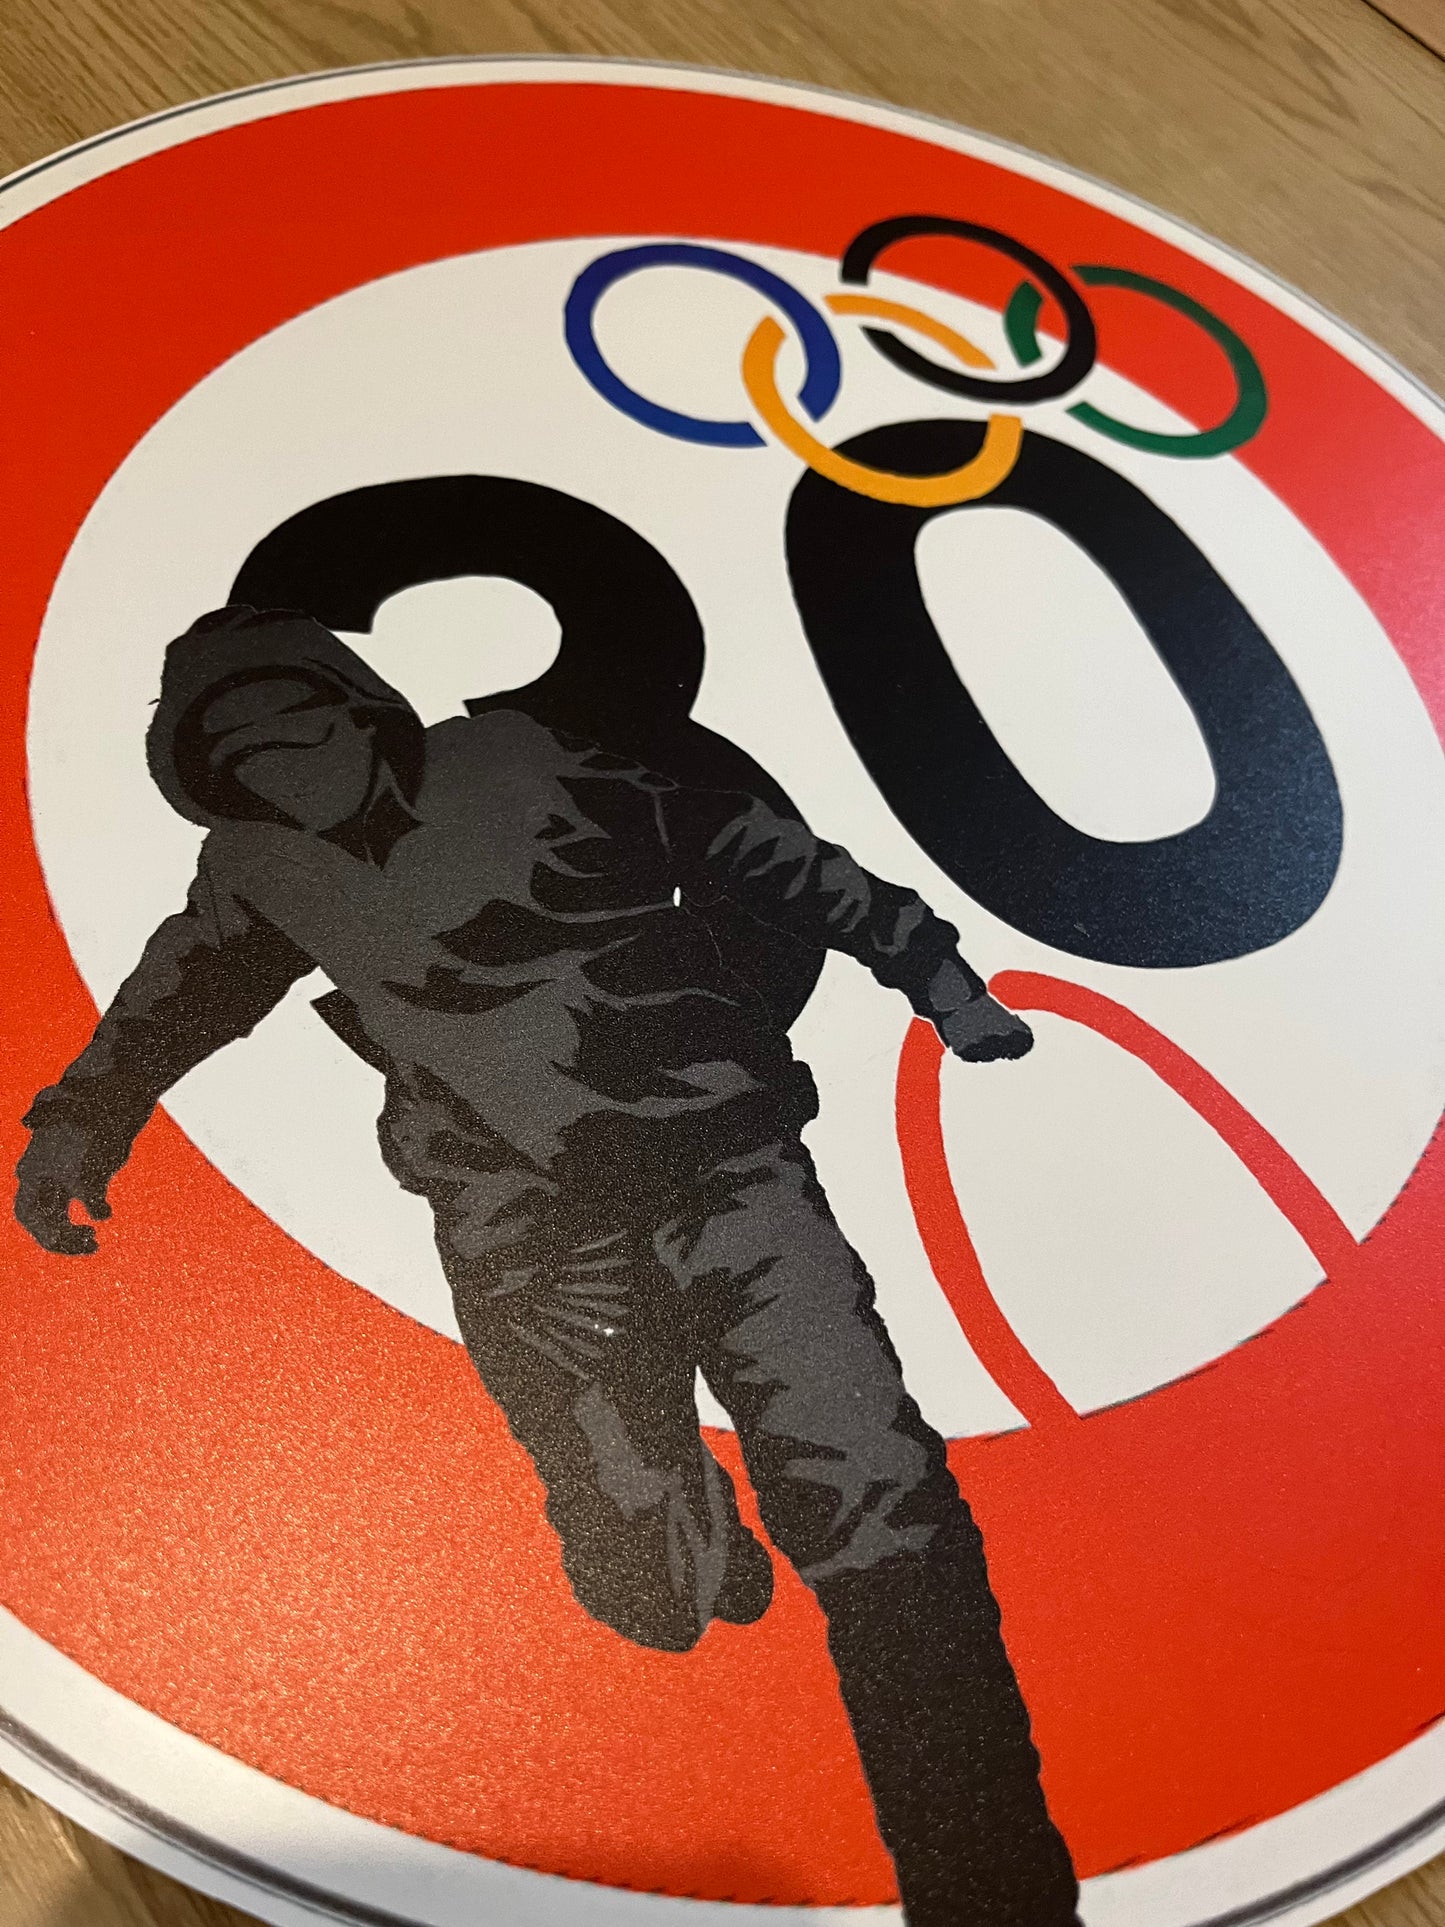 BANKSY - Olympic Rings - Sérigraphie sur panneau signalétique Dibond - Edition Limitée